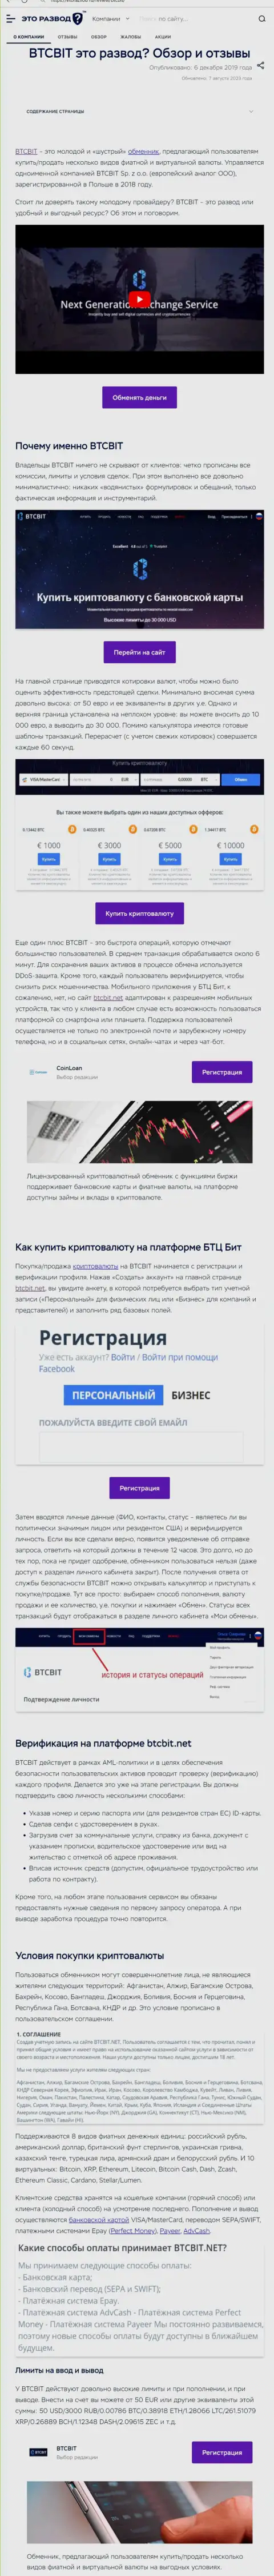 Статья с обзором online-обменки BTC Bit на веб-сайте EtoRazvod Ru